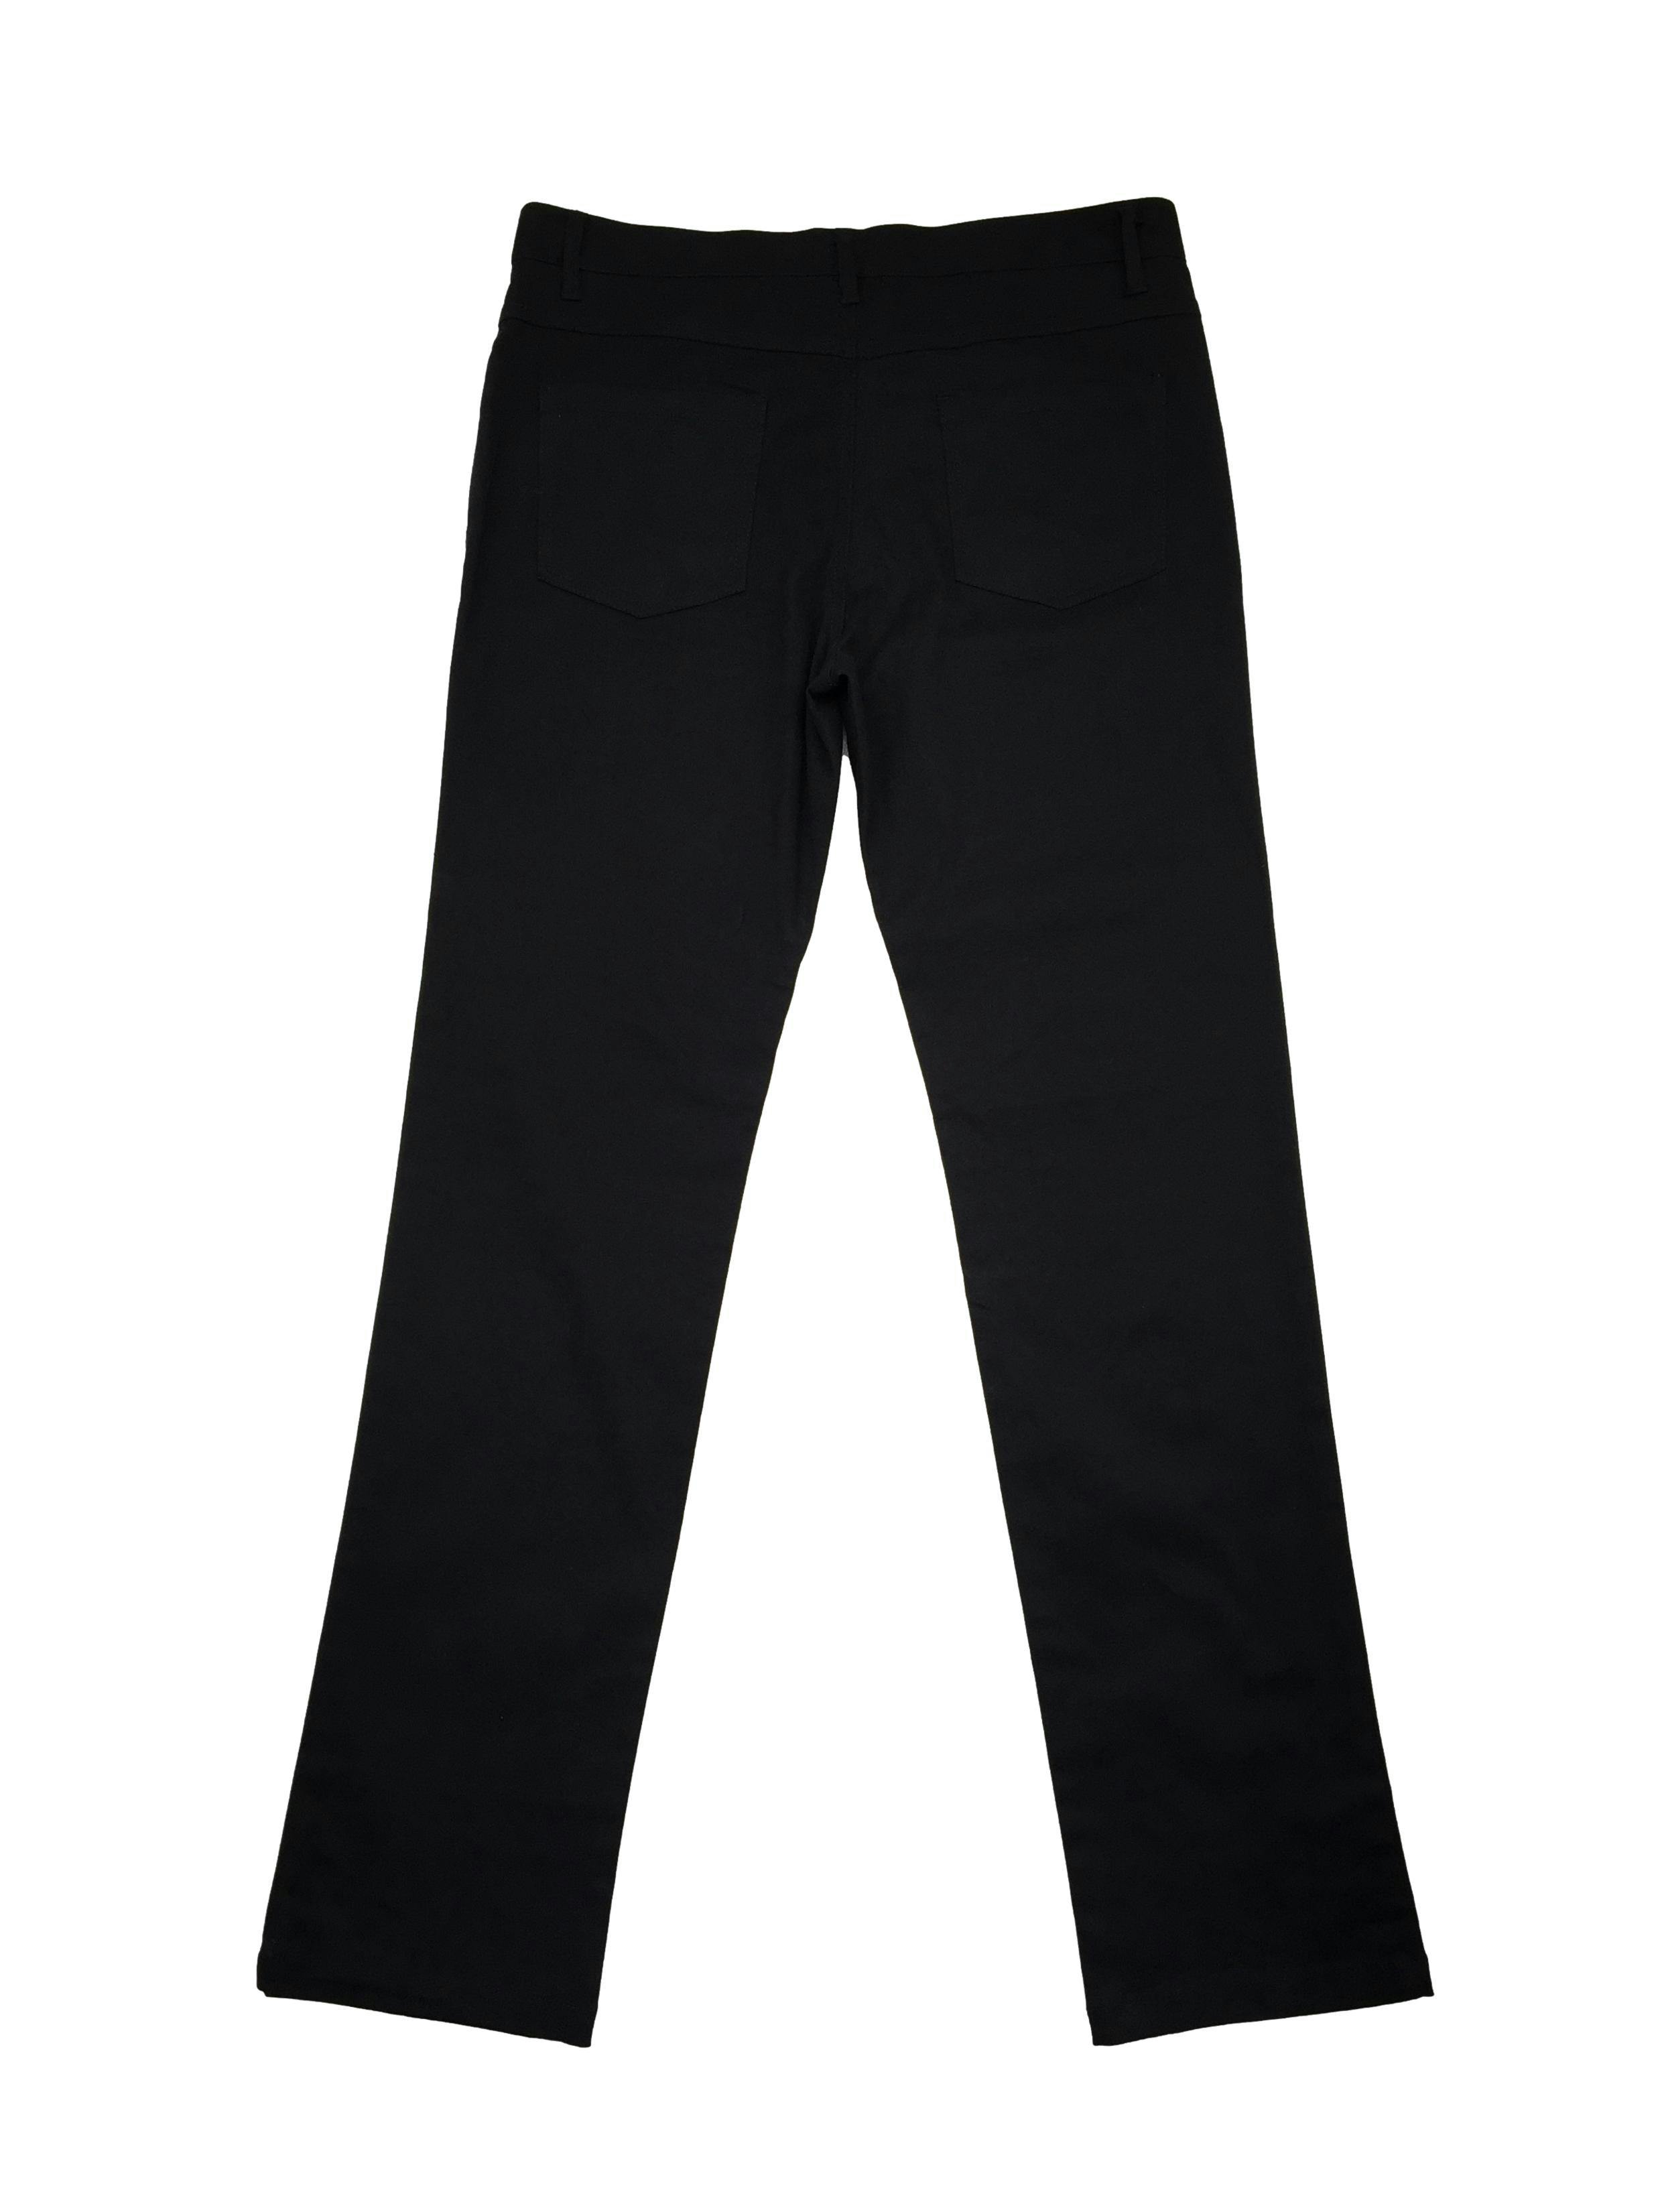 Pantalón Cherokee de drill negro 98% algodón, corte recto, five-pockets. Cintura 86cm, Tiro 25cm, Largo 108cm.